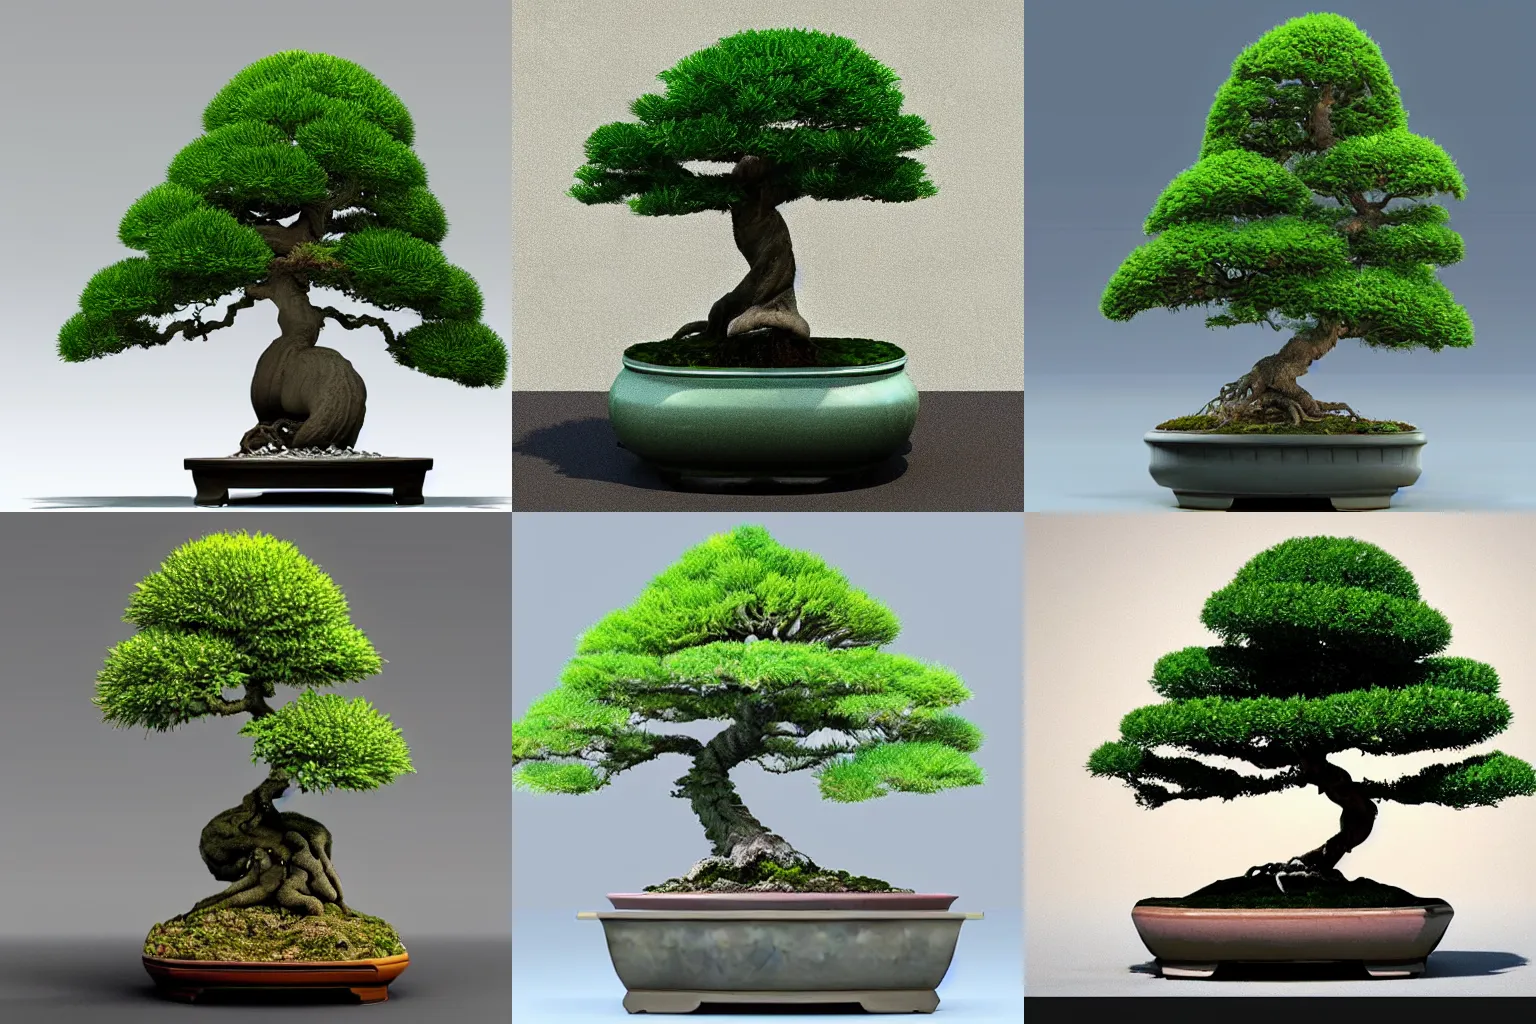 Prompt: a hyper realistic 3d model of a bonsai tree